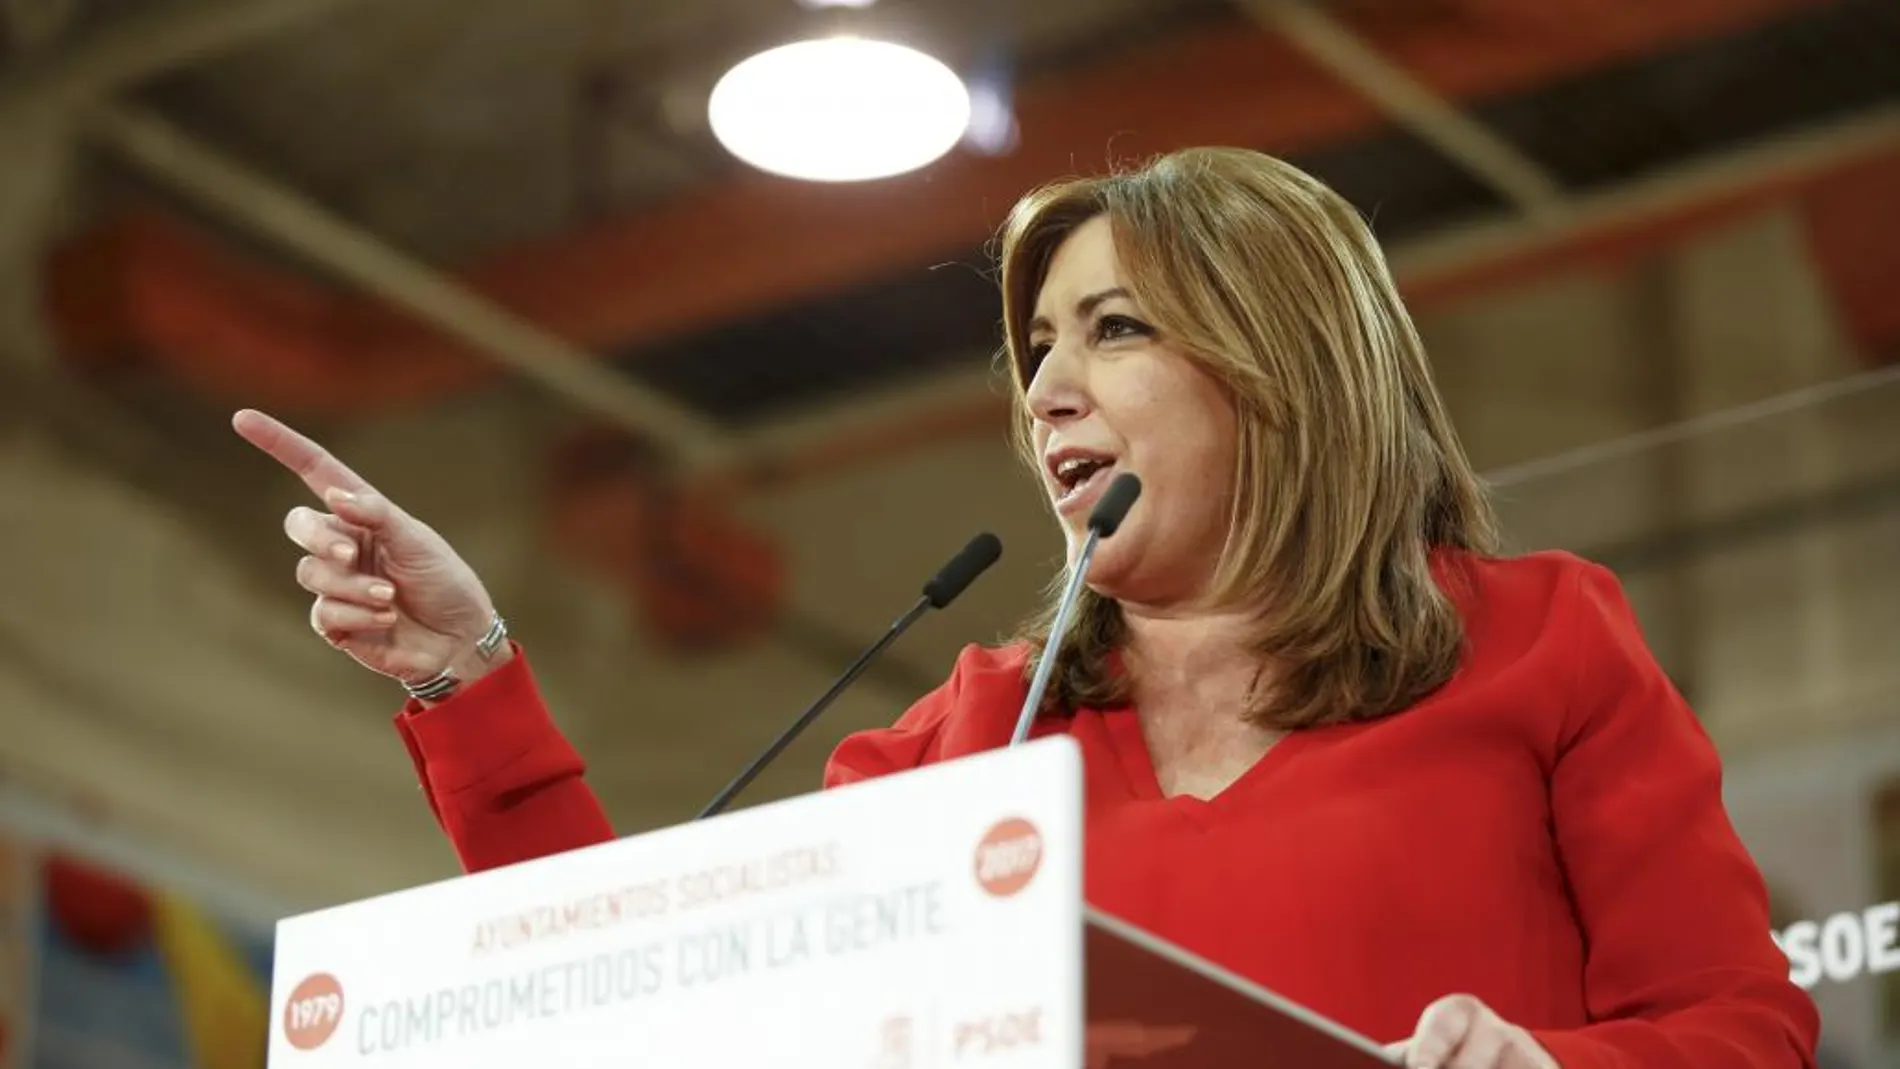 La candidatura de Susana Díaz divide de nuevo a los socialistas de la Comunidad